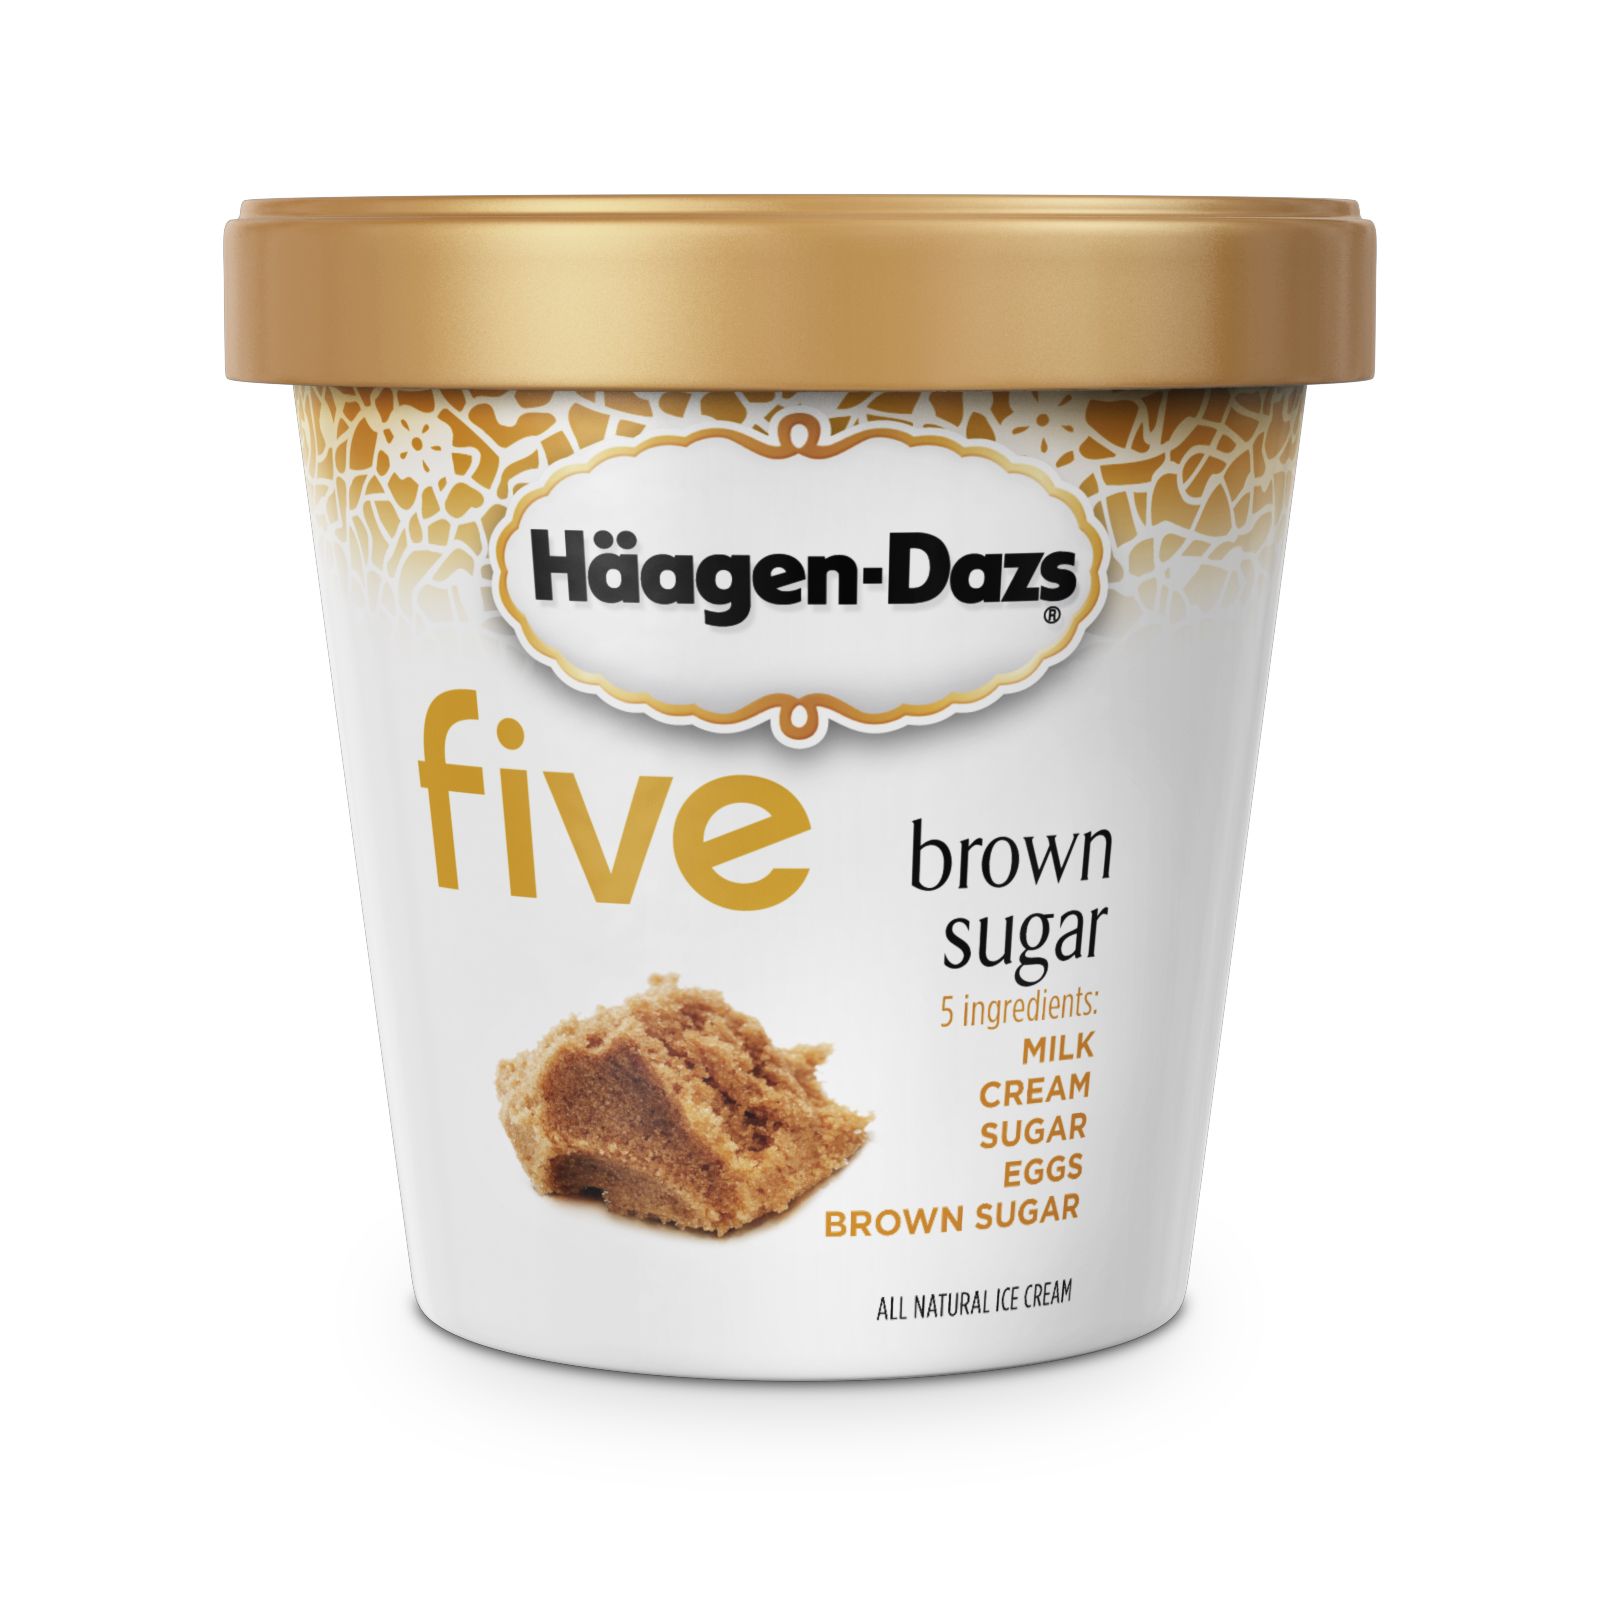 Häagen-Dazs Five Ingredients - Natural Haagen Dazs Ice Cream